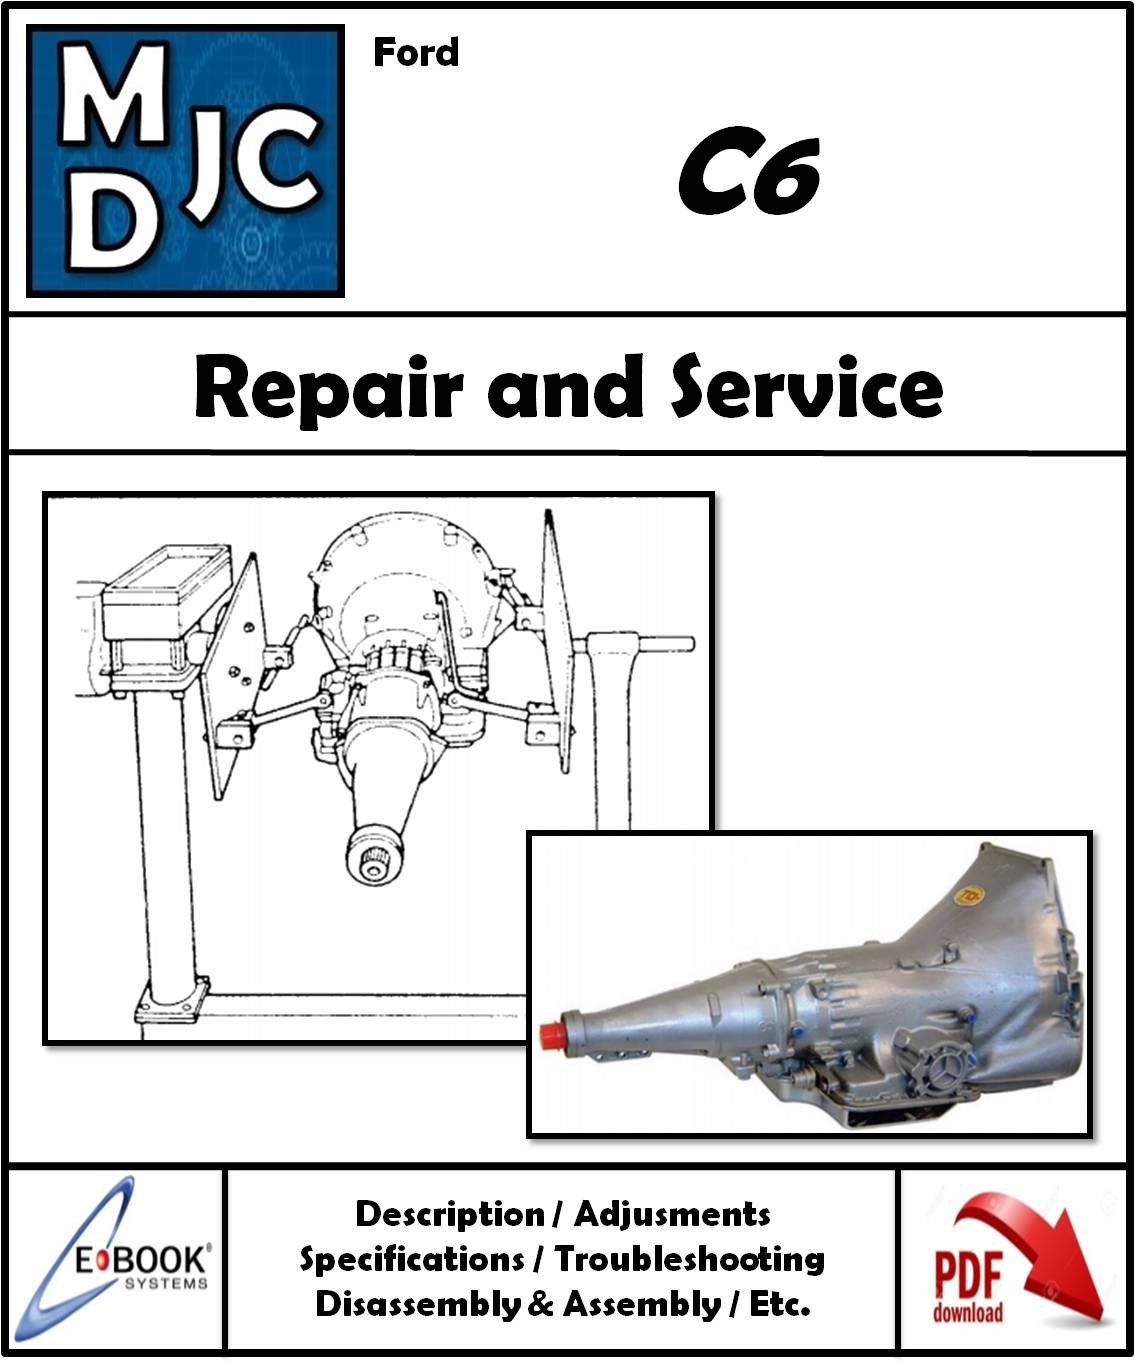 Manual de Taller (Reparación y Servicio) Caja Ford C6